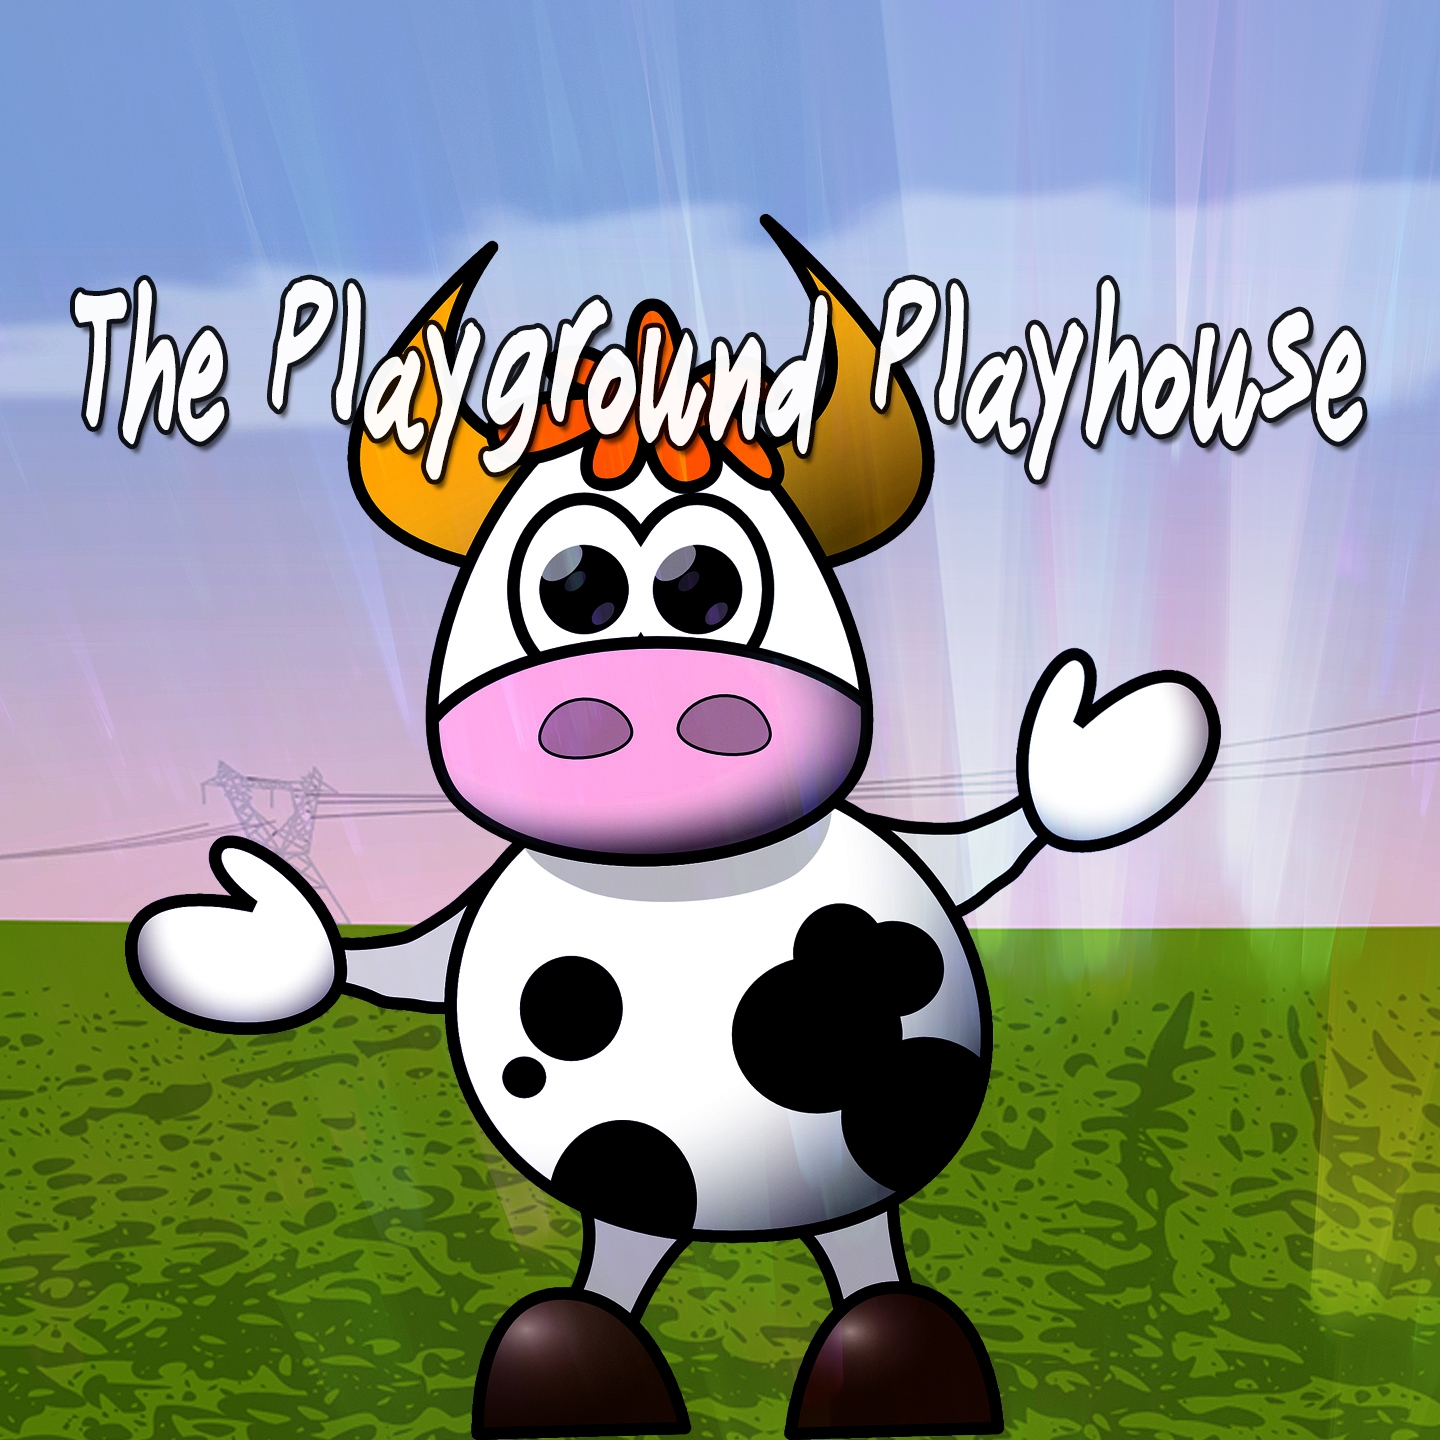 The Playground Playhouse